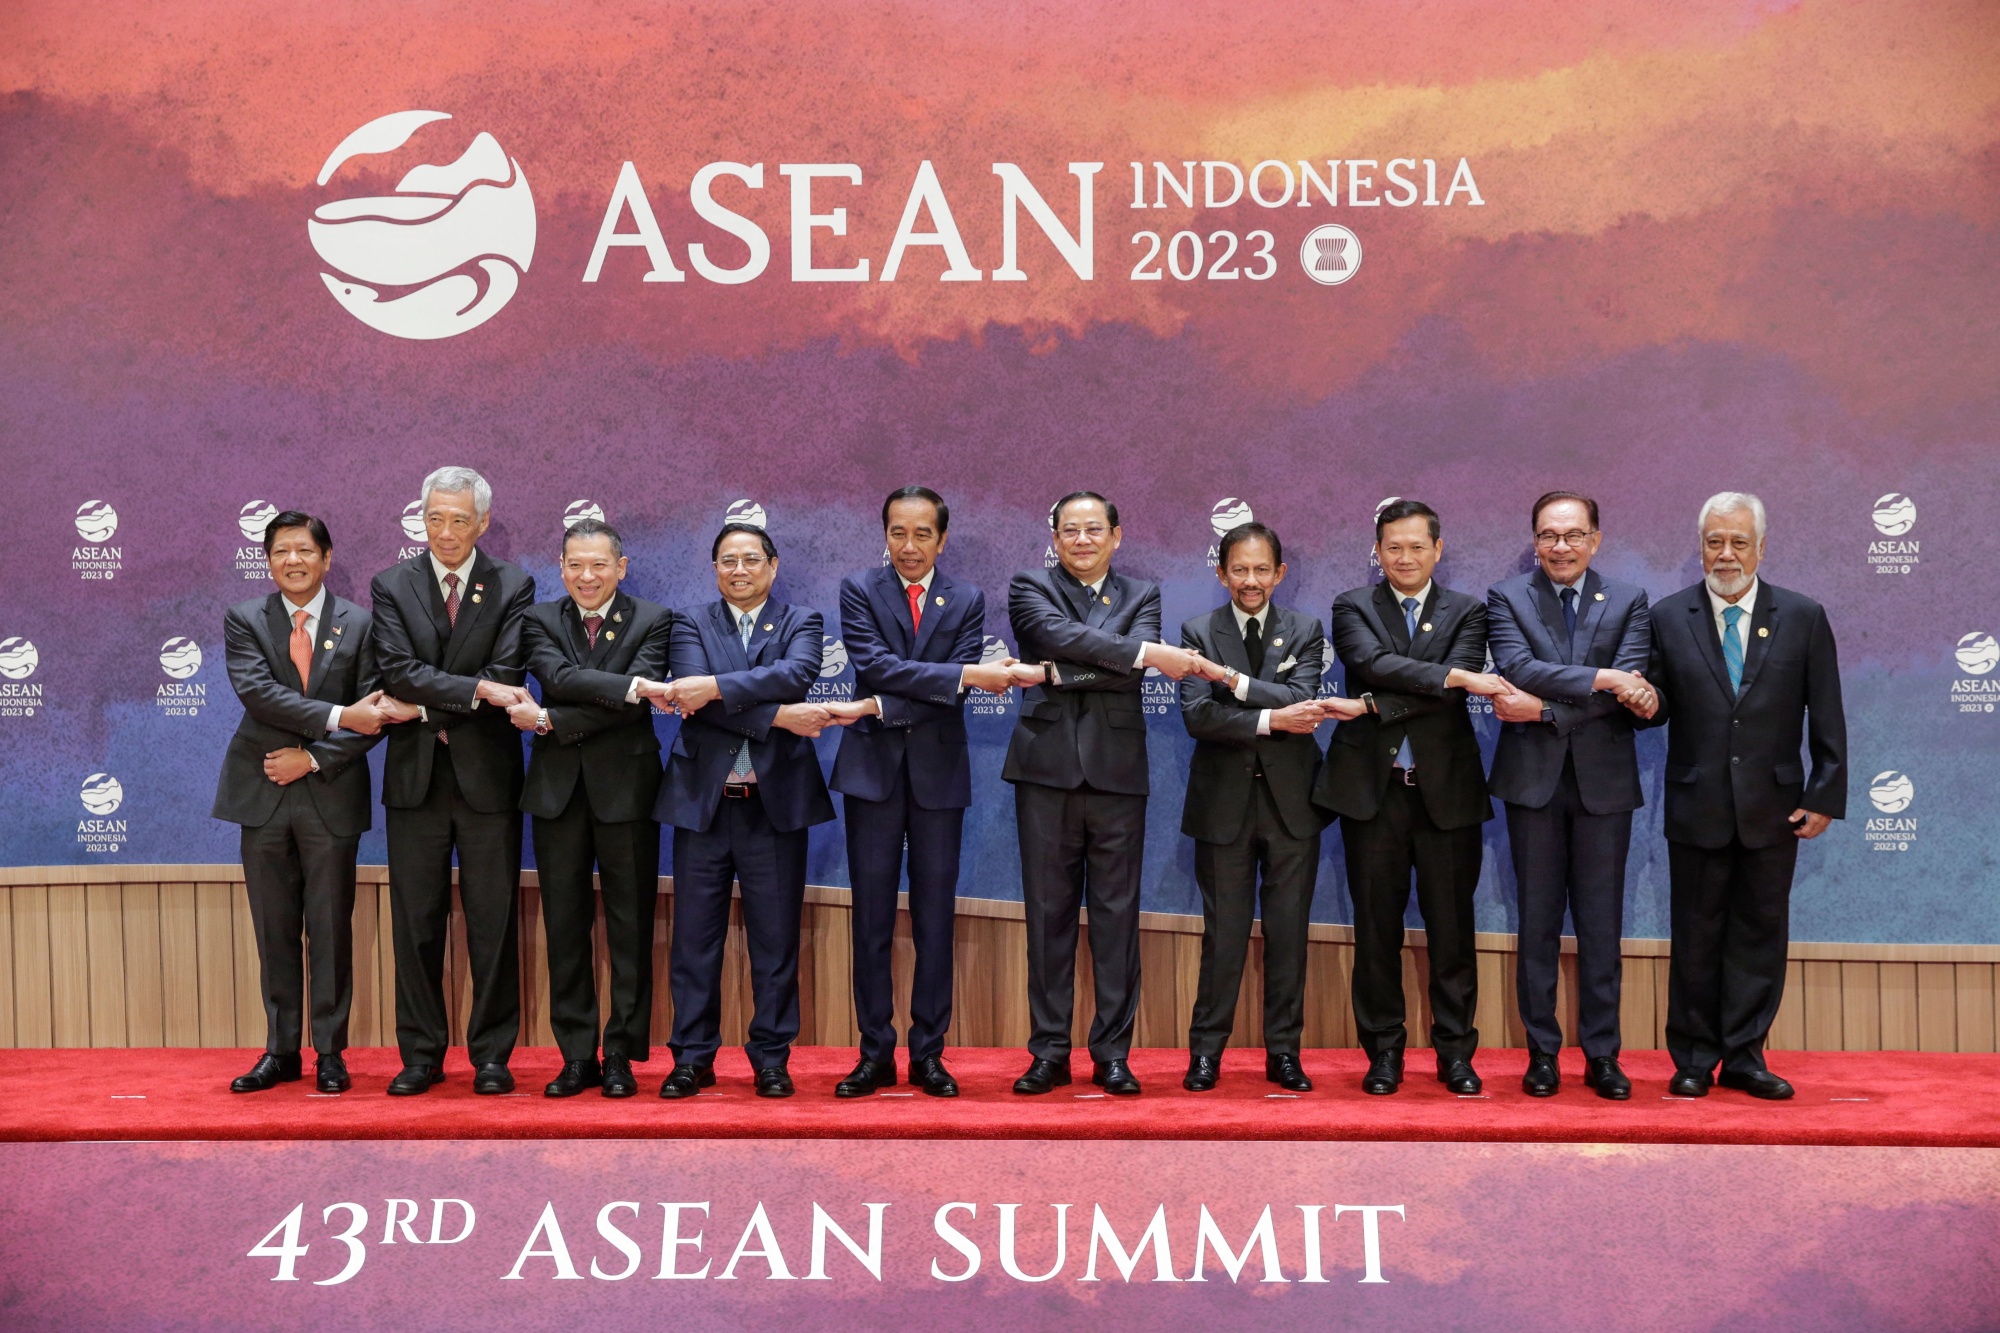 Asean News China Premier Makes Debut at Summit With US VP Kamala